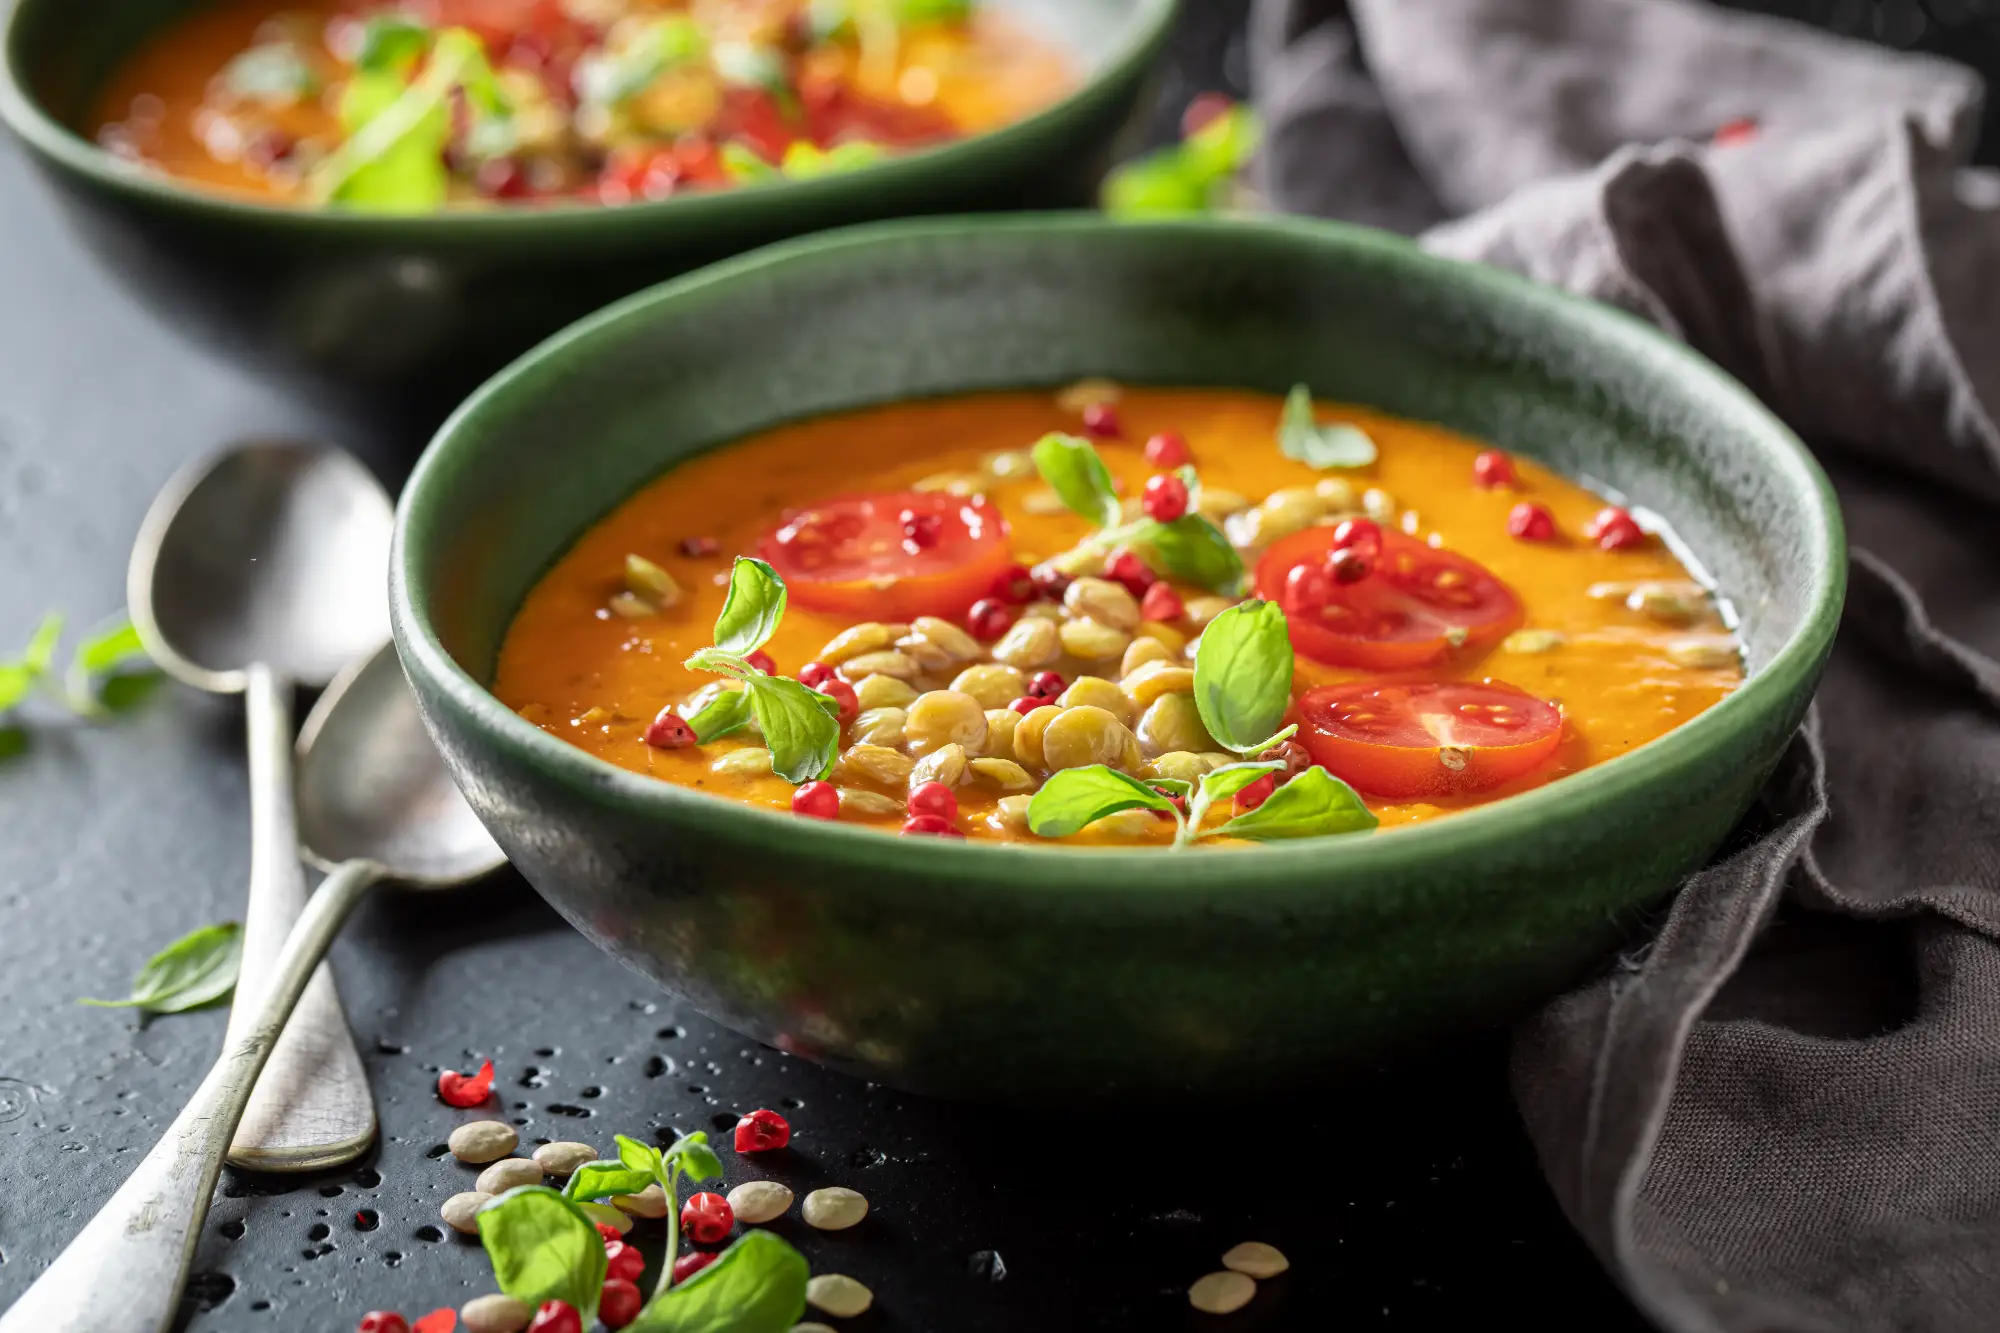 ricetta per dimagrire in menopausa zuppa con verdura e legumi Come dimagrire in menopausa: 5 + 1 mosse per riuscirci davvero